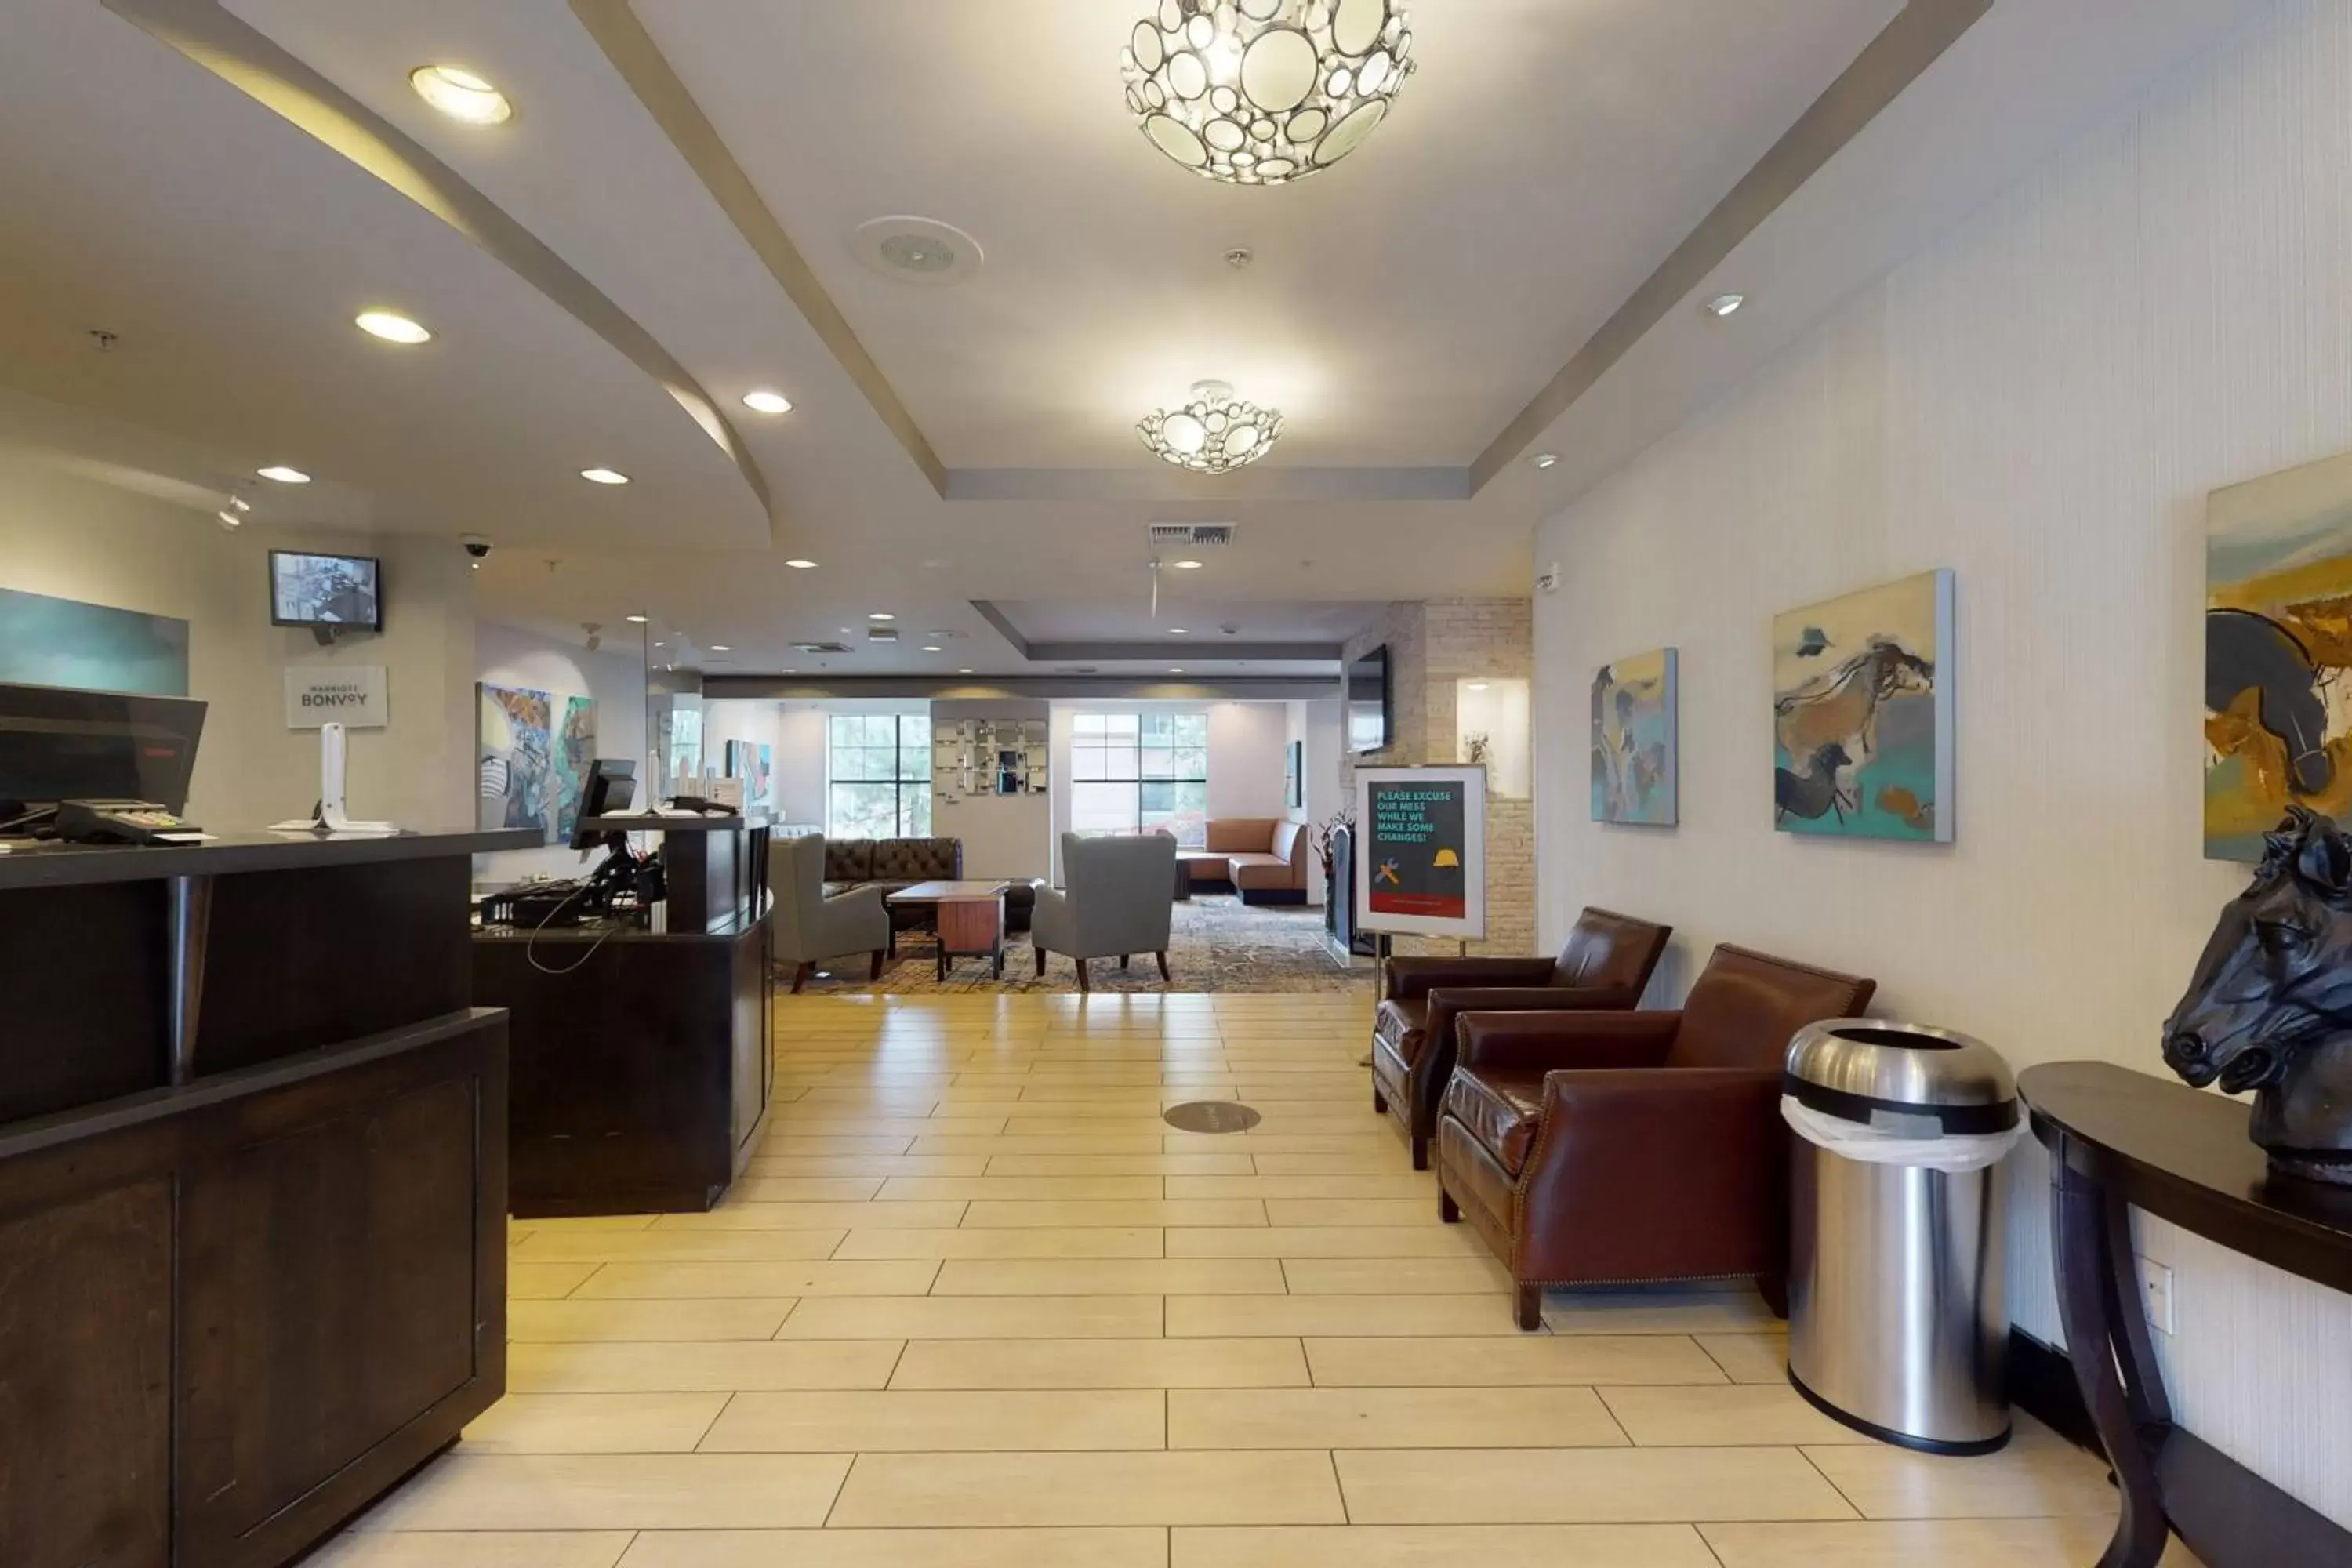 Lobby or reception in Residence Inn San Diego Del Mar